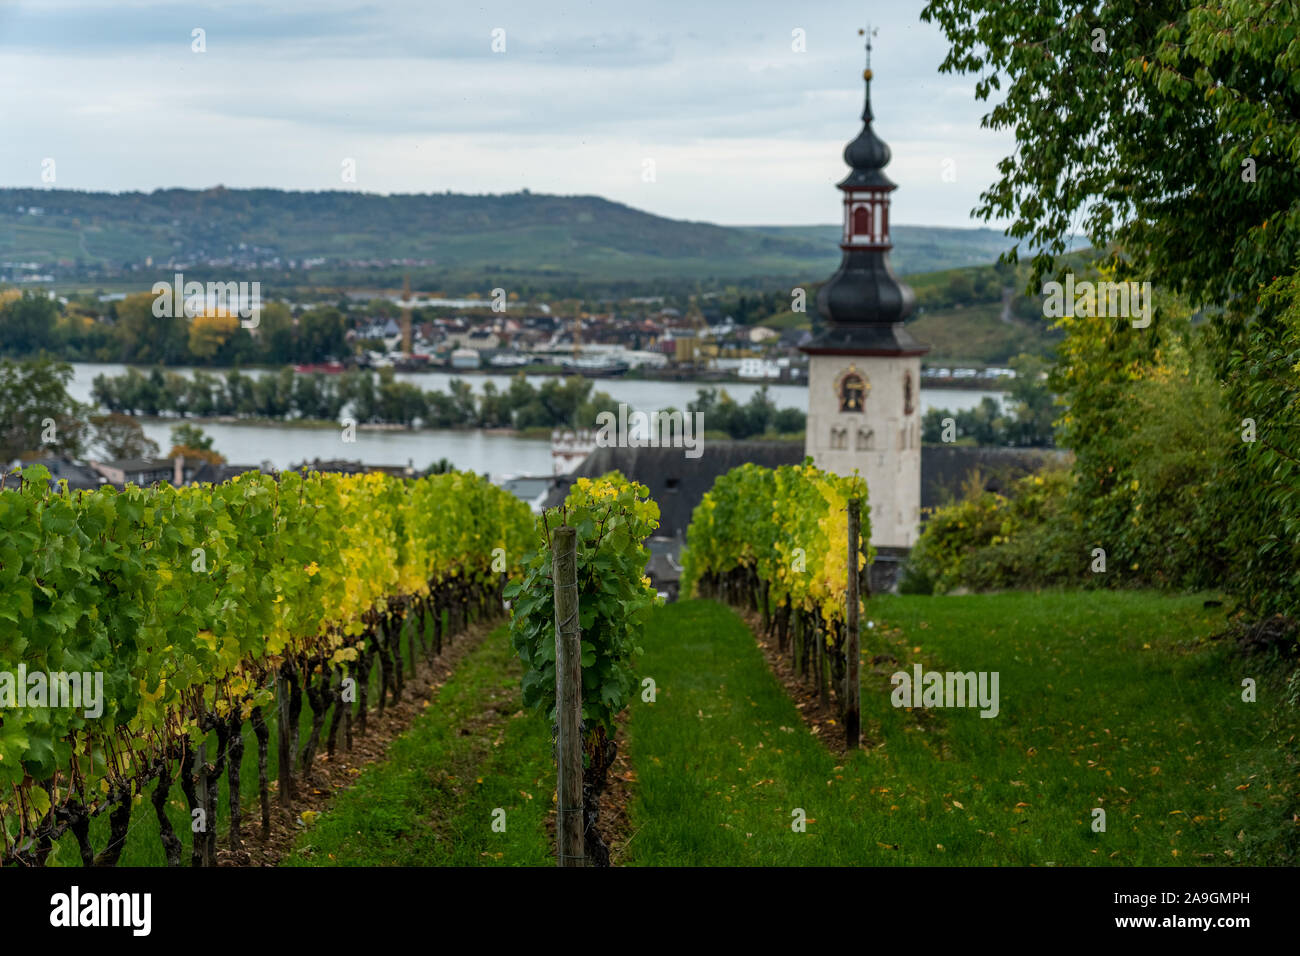 Vista sobre los viñedos, Rin durante el otoño en ruedesheim, valle del Rin medio, Alemania Foto de stock